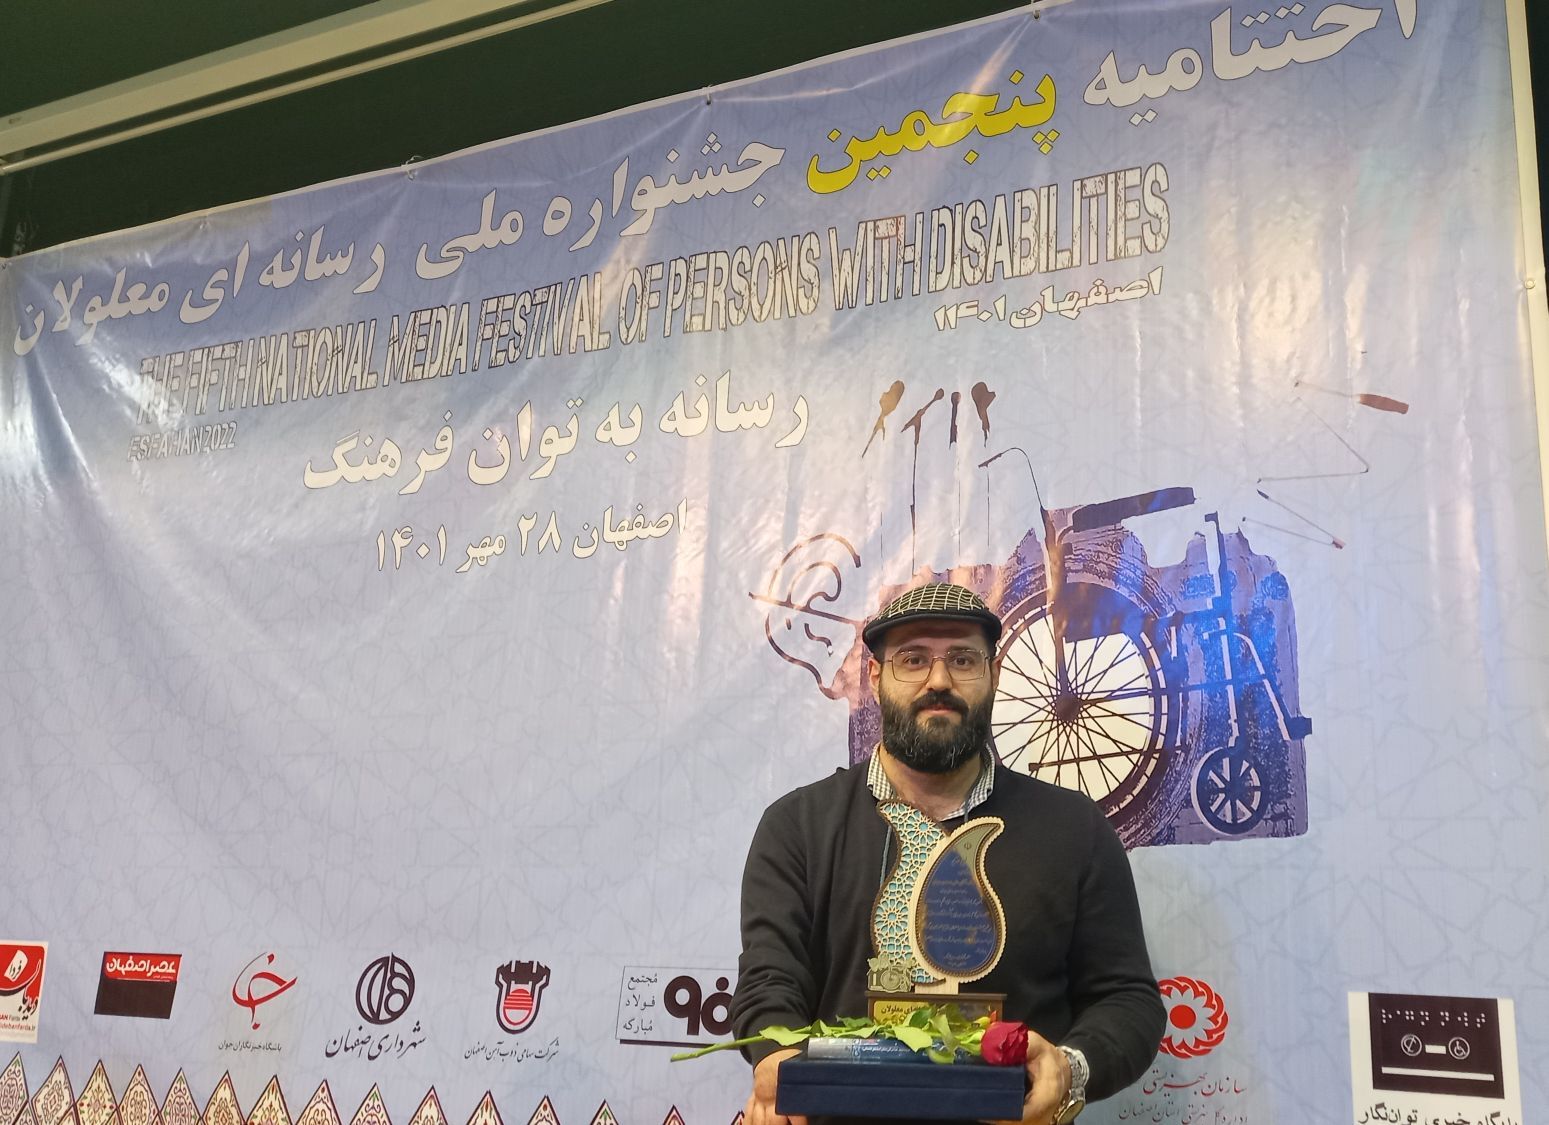 خبرنگار شهرآرانیوز رتبه سوم جشنواره ملی رسانه ای معلولان را کسب کرد